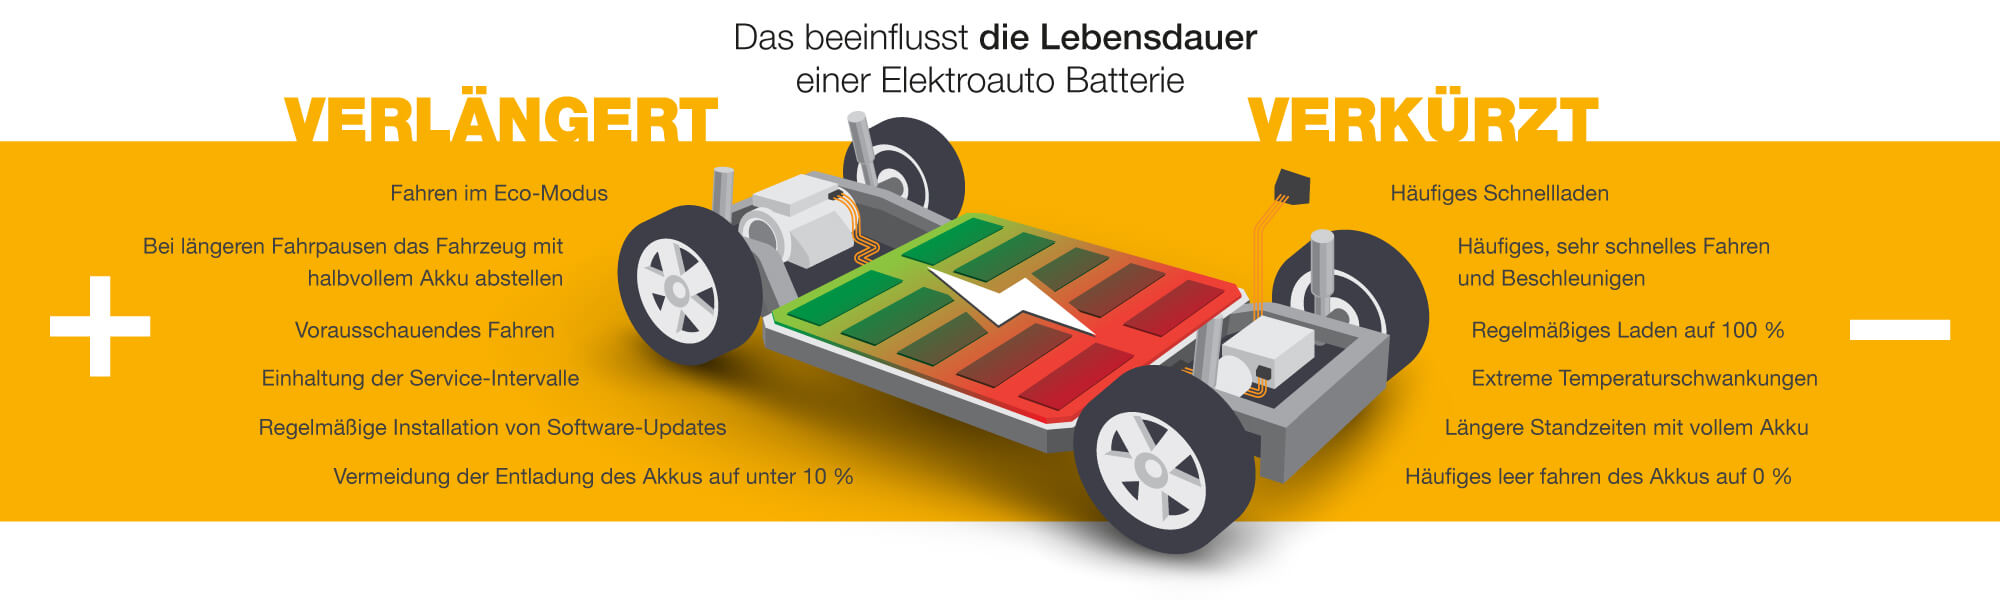 TH Mittelhessen will Lebensdauer von Elektroauto-Batterien